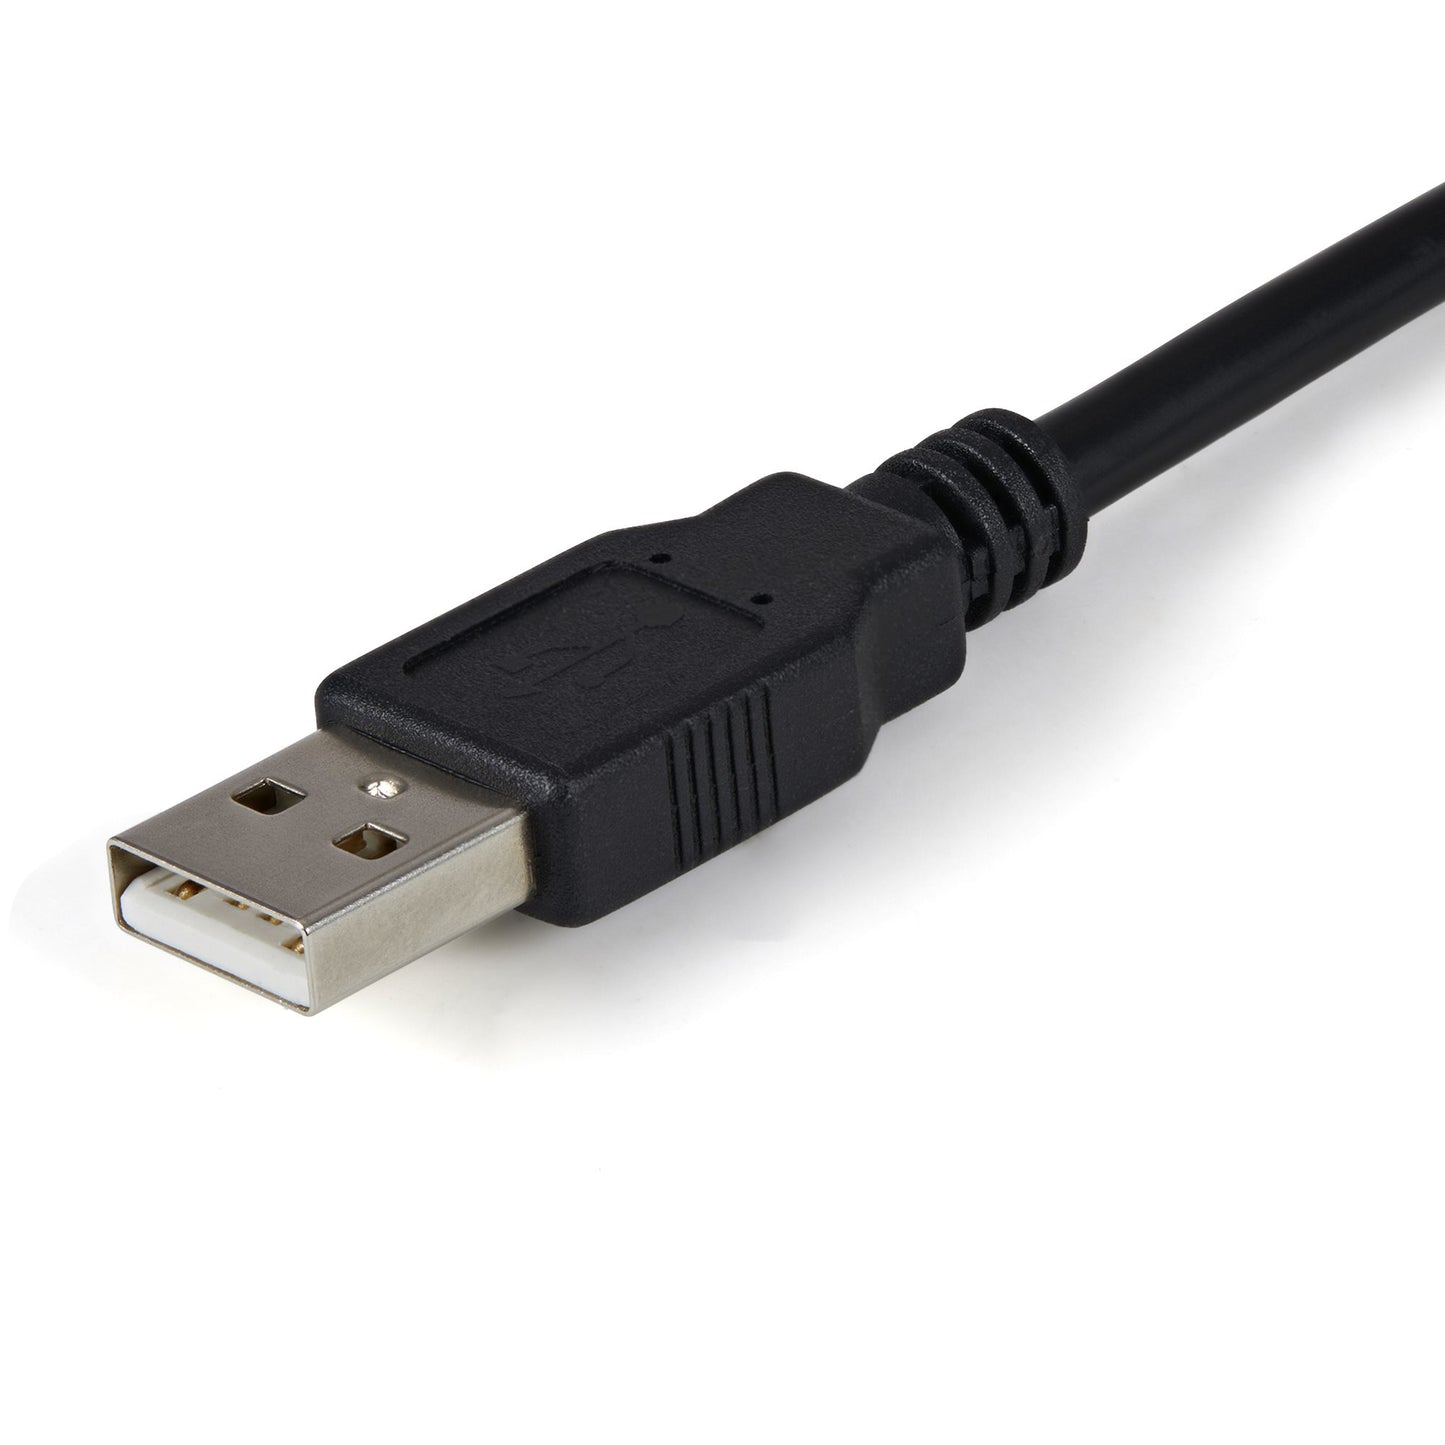 STARTECH CONSIG CABLE 1.8M ADAPTADOR USB A 2 CABL PUERTOS SERIAL CON RETENCION COM.